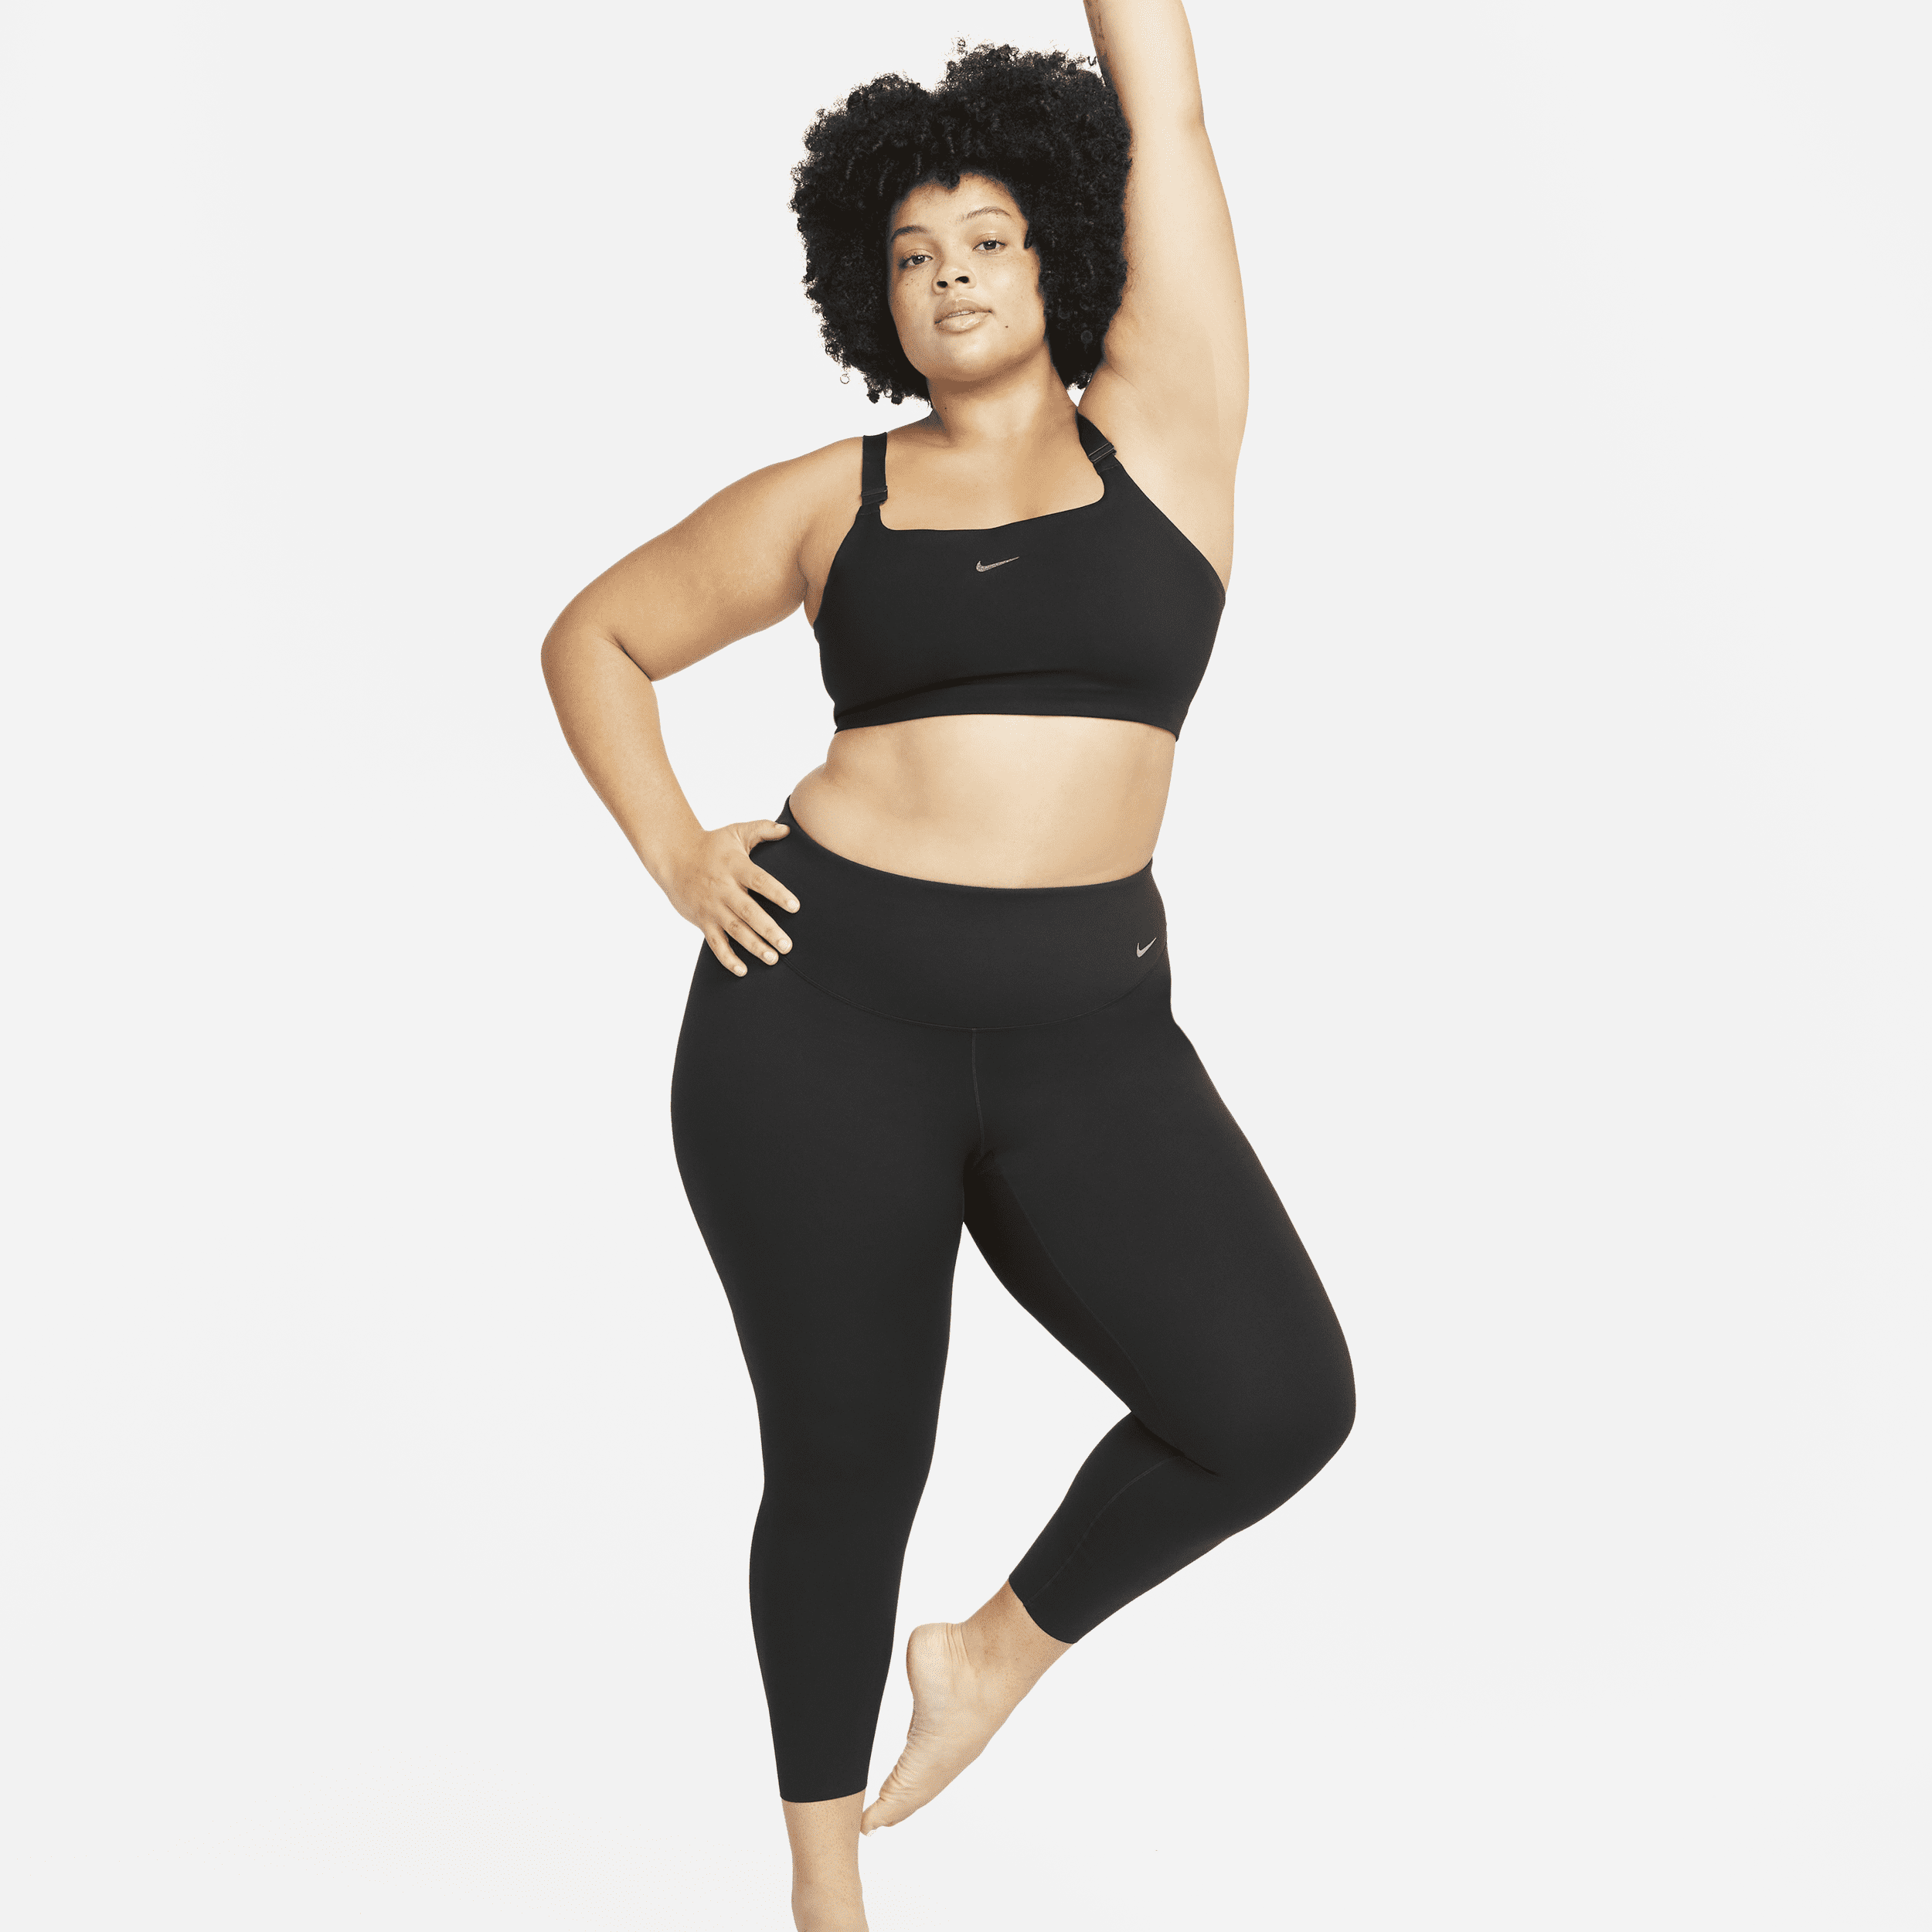 Nike Zenvy-leggings i 7/8-længde med høj talje og let støtte til kvinder (plus size) - sort